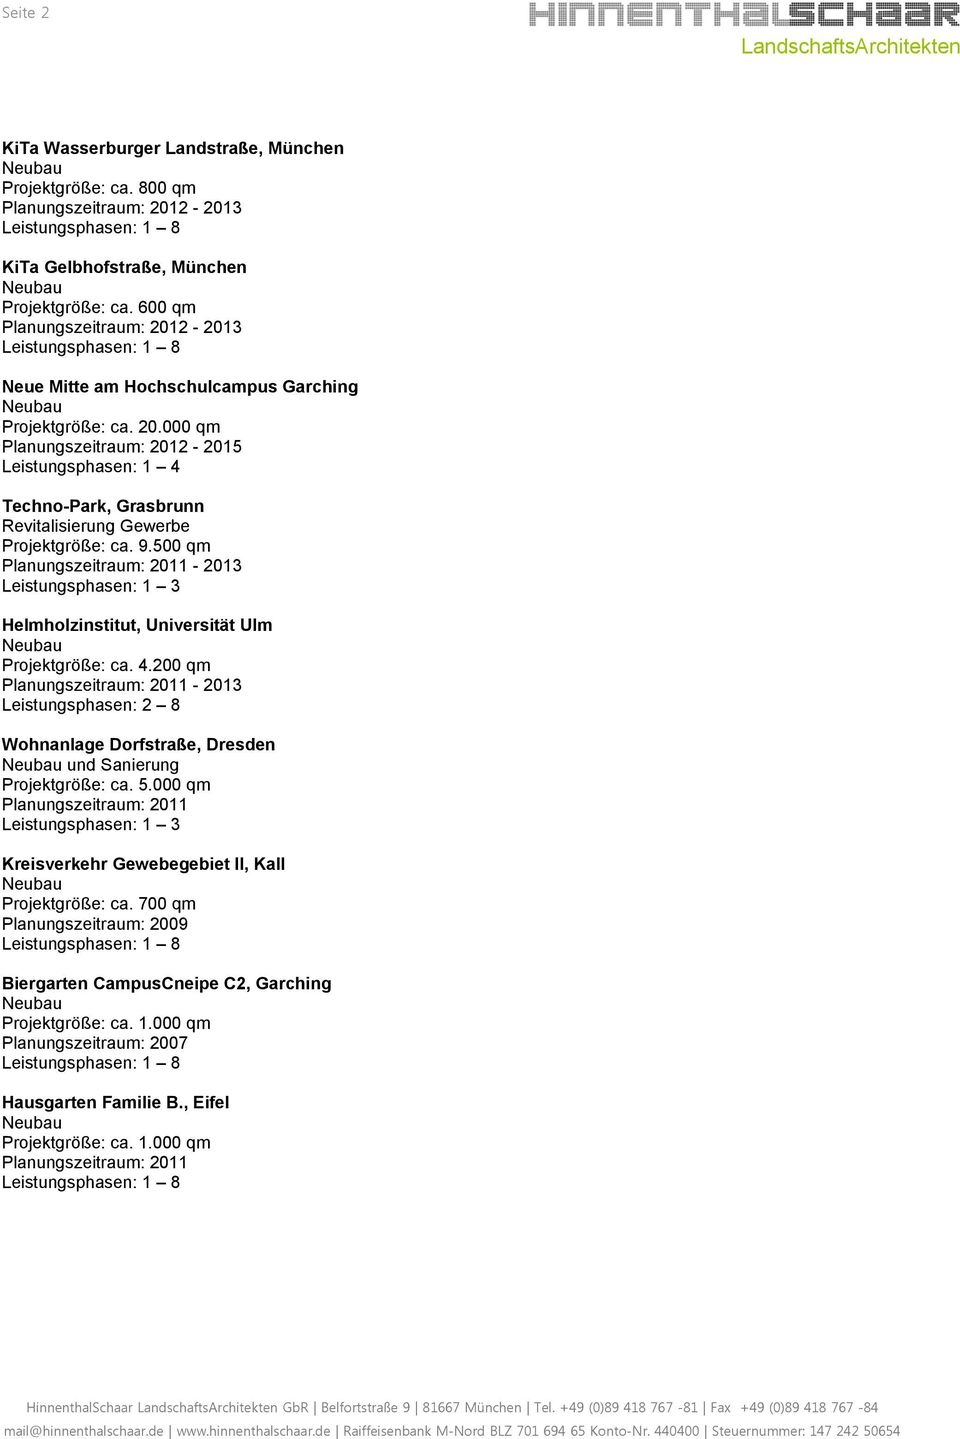 500 qm Planungszeitraum: 2011-2013 Leistungsphasen: 1 3 Helmholzinstitut, Universität Ulm Projektgröße: ca. 4.